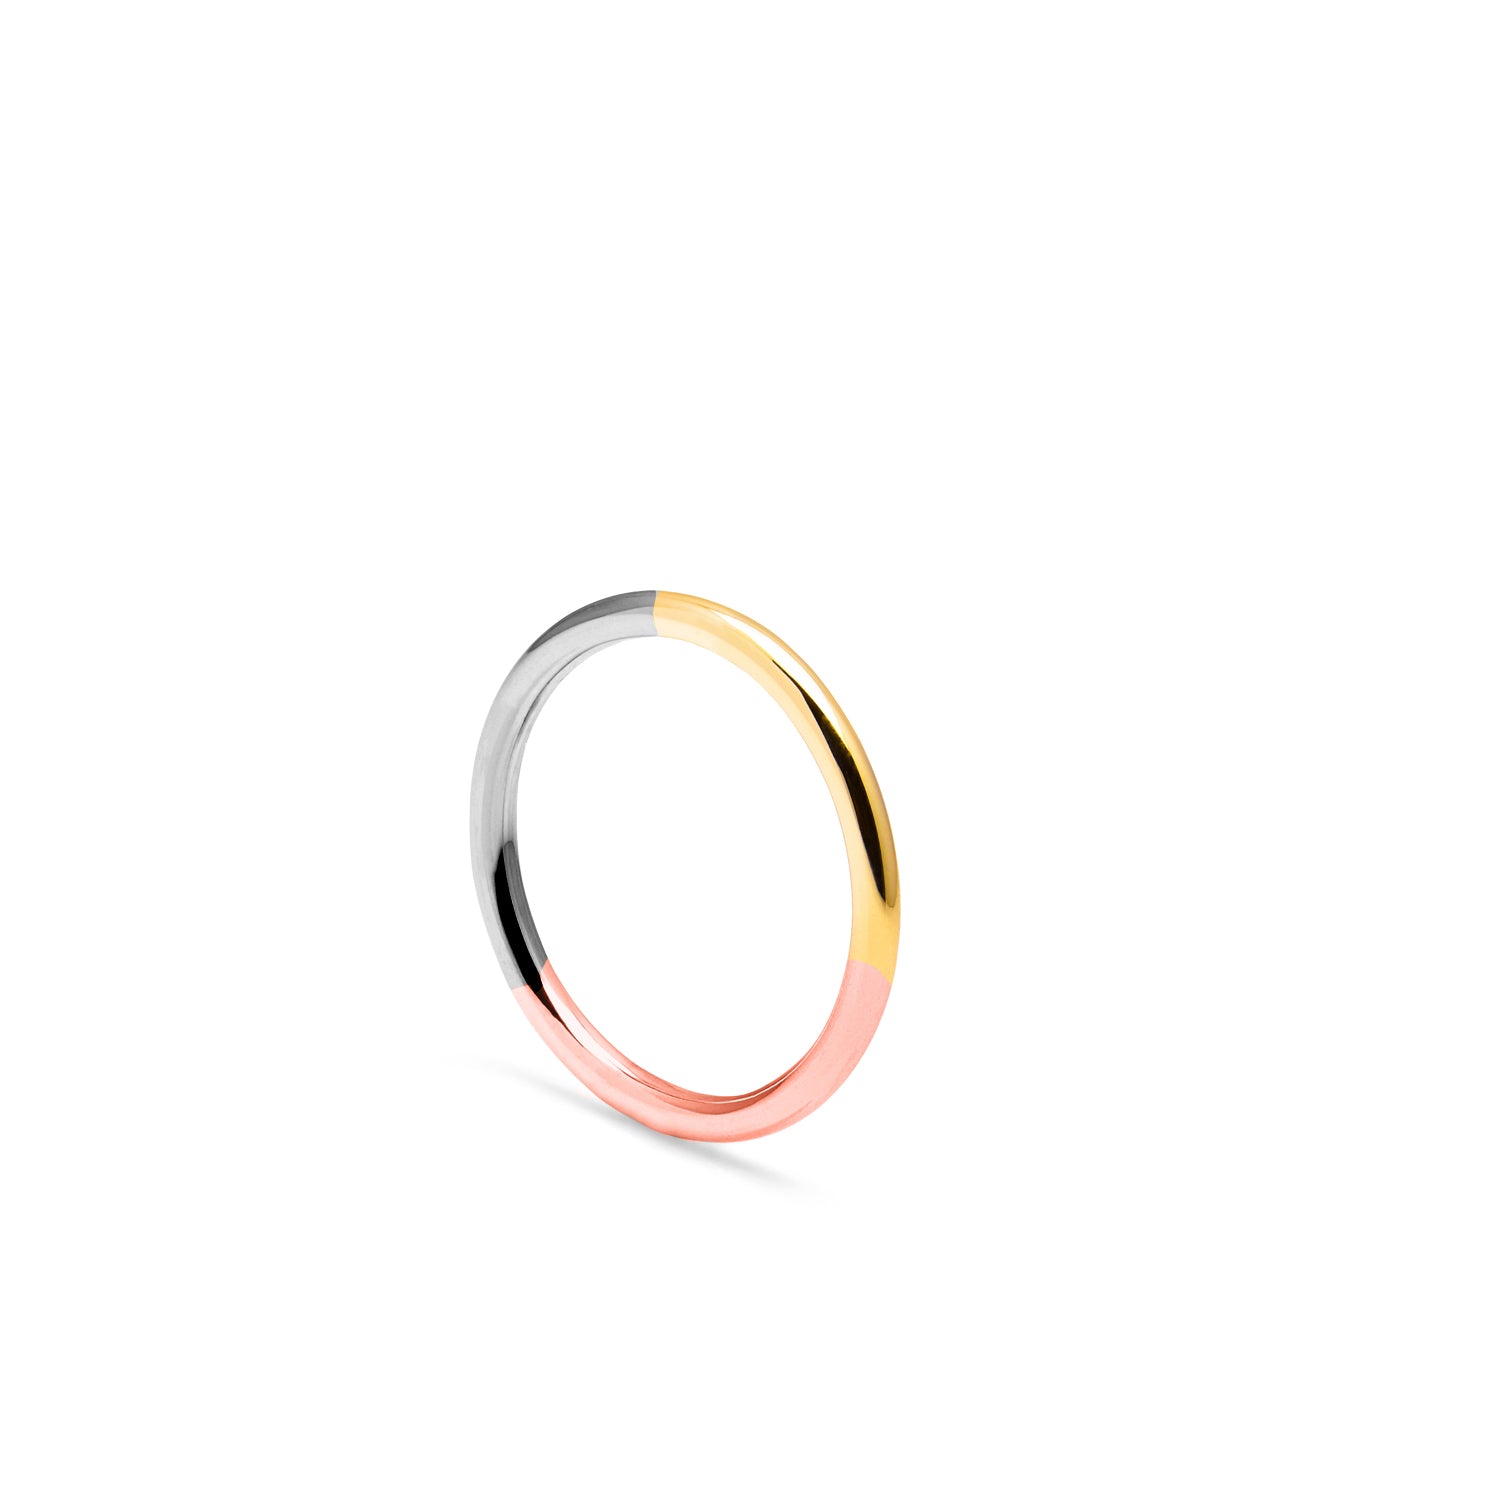 Three-tone Round Ring - 18k Yellow, Rose & White